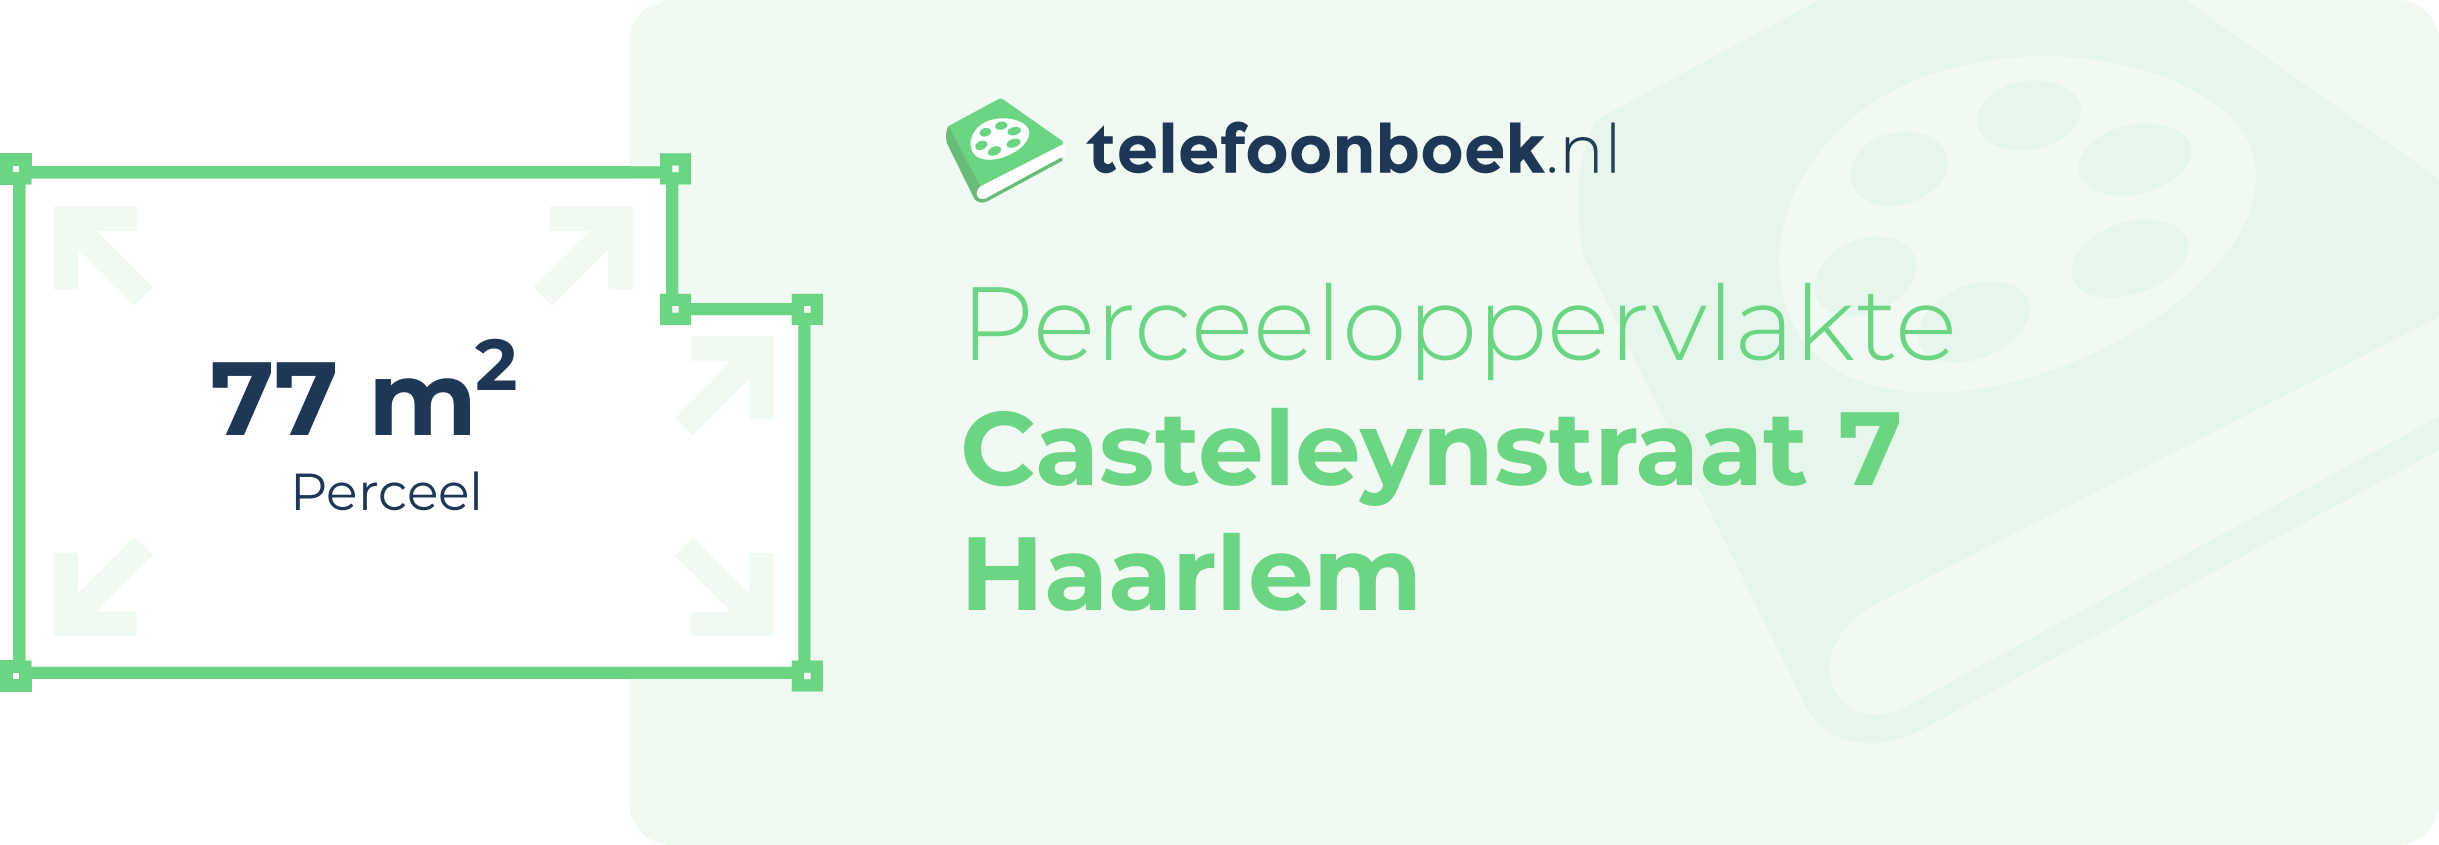 Perceeloppervlakte Casteleynstraat 7 Haarlem